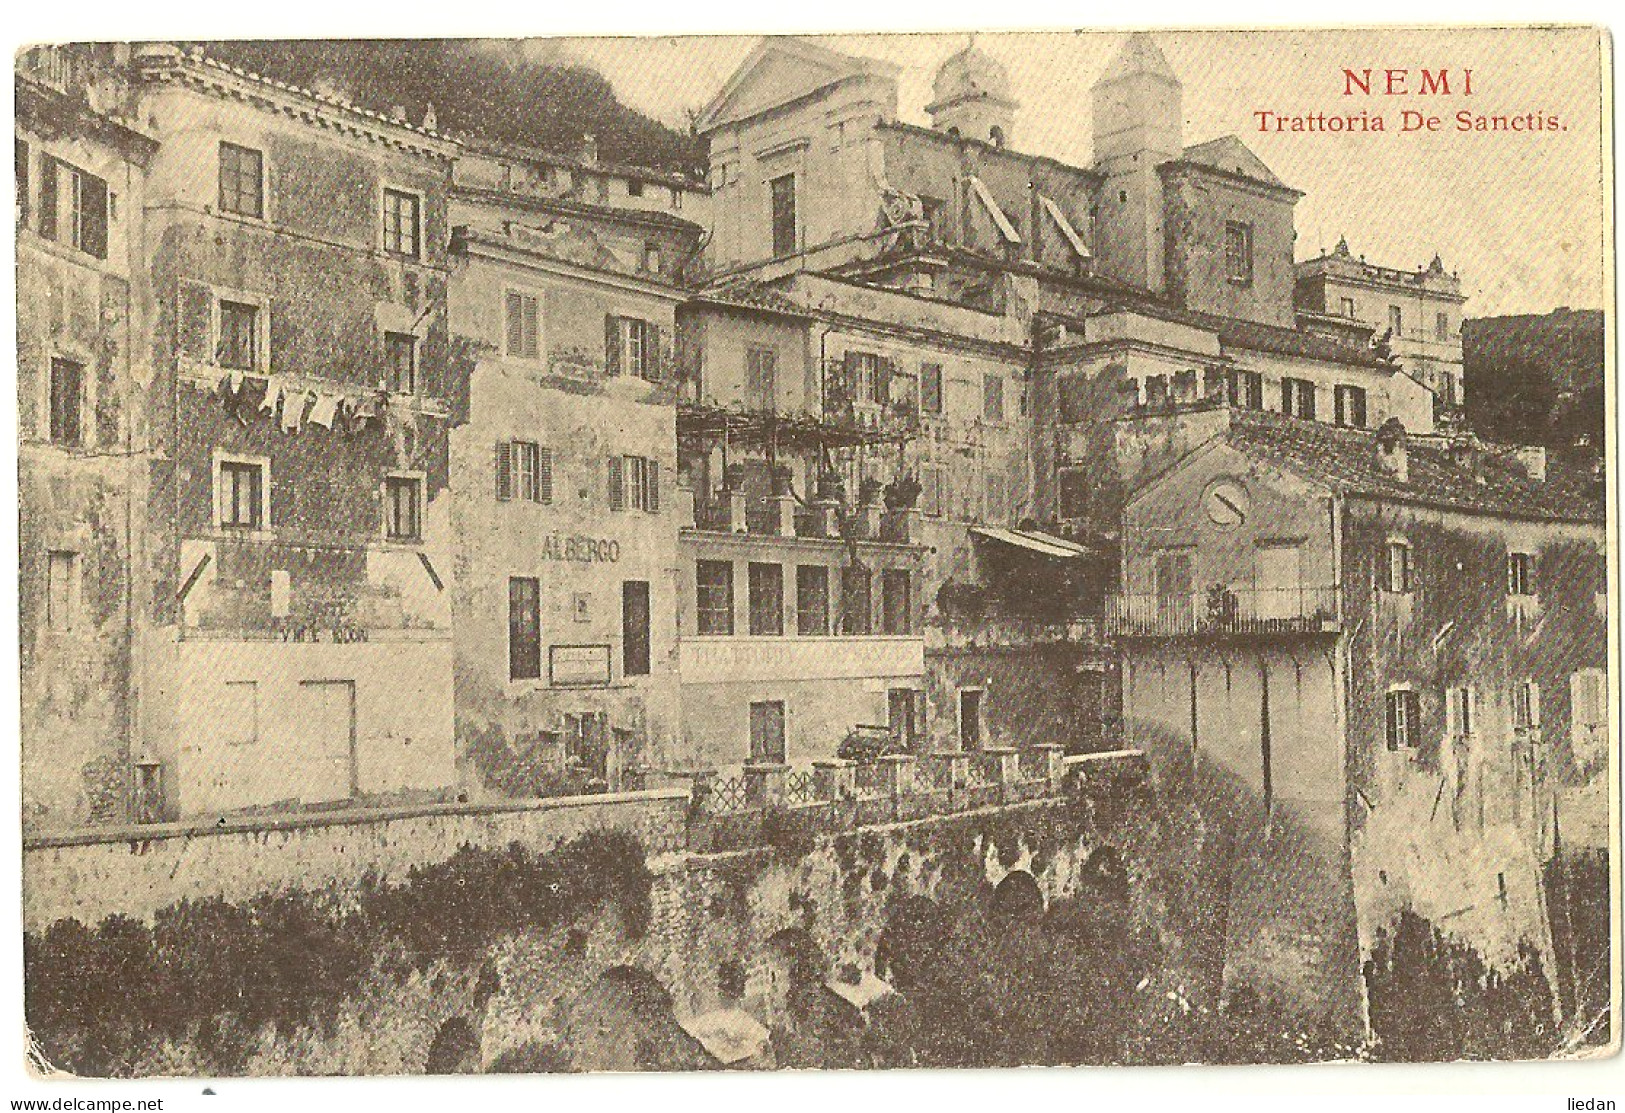 NEMI - Trattoria De Sanctis - 1915 - Bares, Hoteles Y Restaurantes